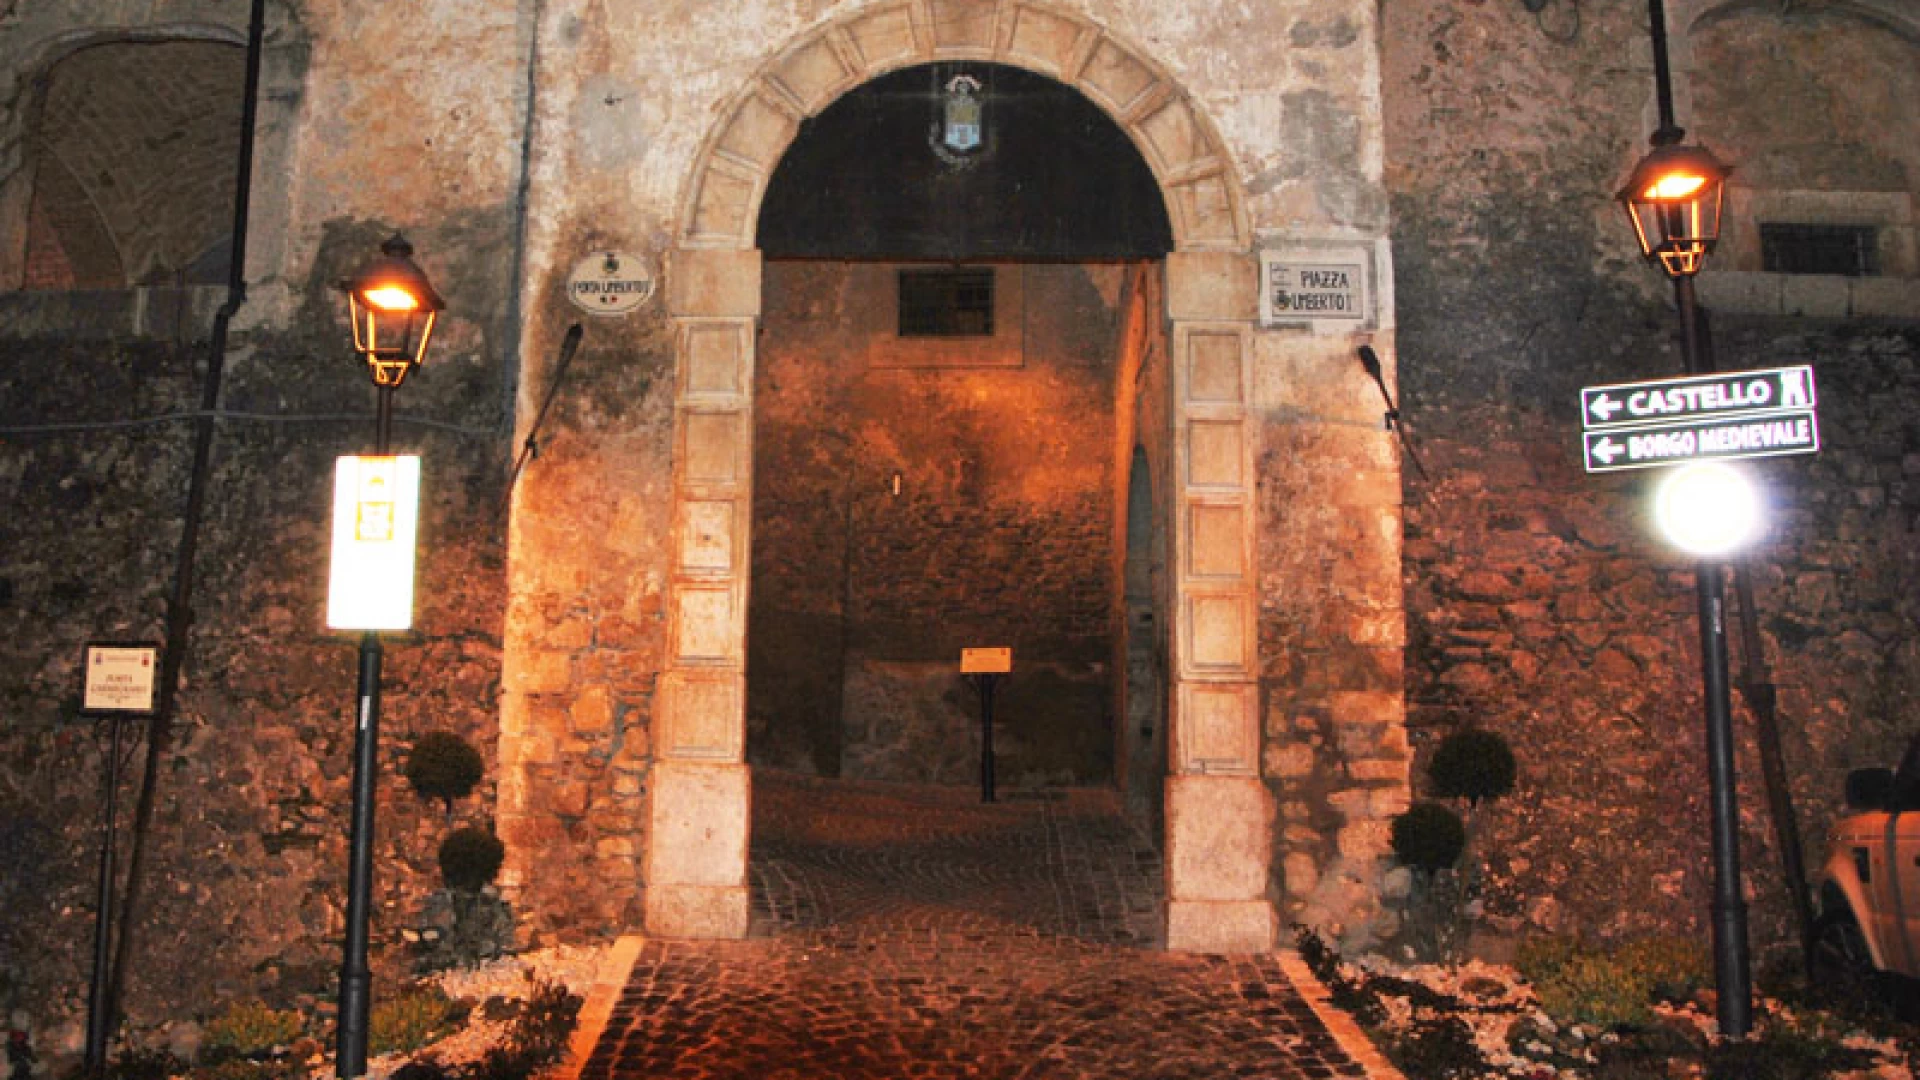 Fornelli: il Borgo Medievale si arricchisce giorno dopo giorno. Installati i tabelloni “turistici” con indicazioni in inglese, italiano e dialetto del posto.